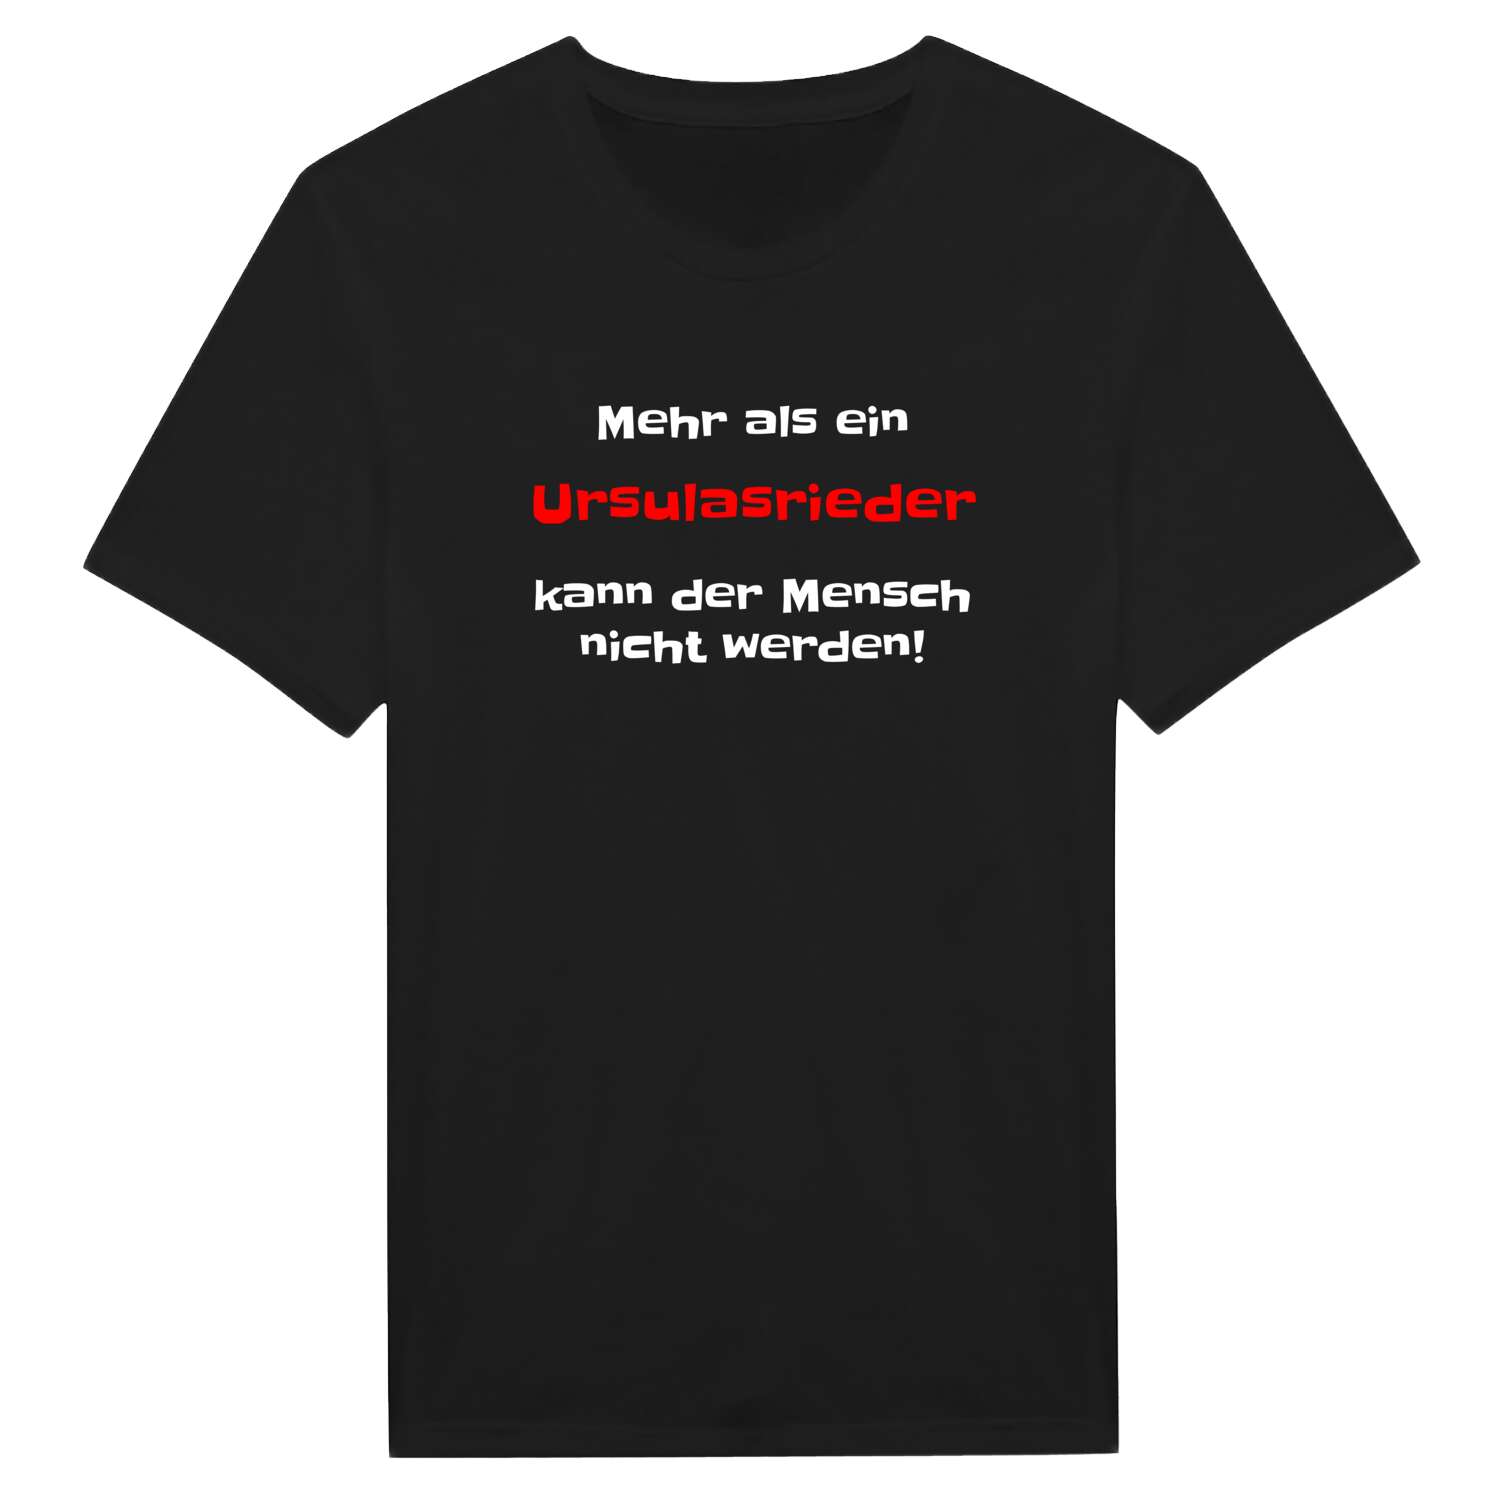 Ursulasried T-Shirt »Mehr als ein«